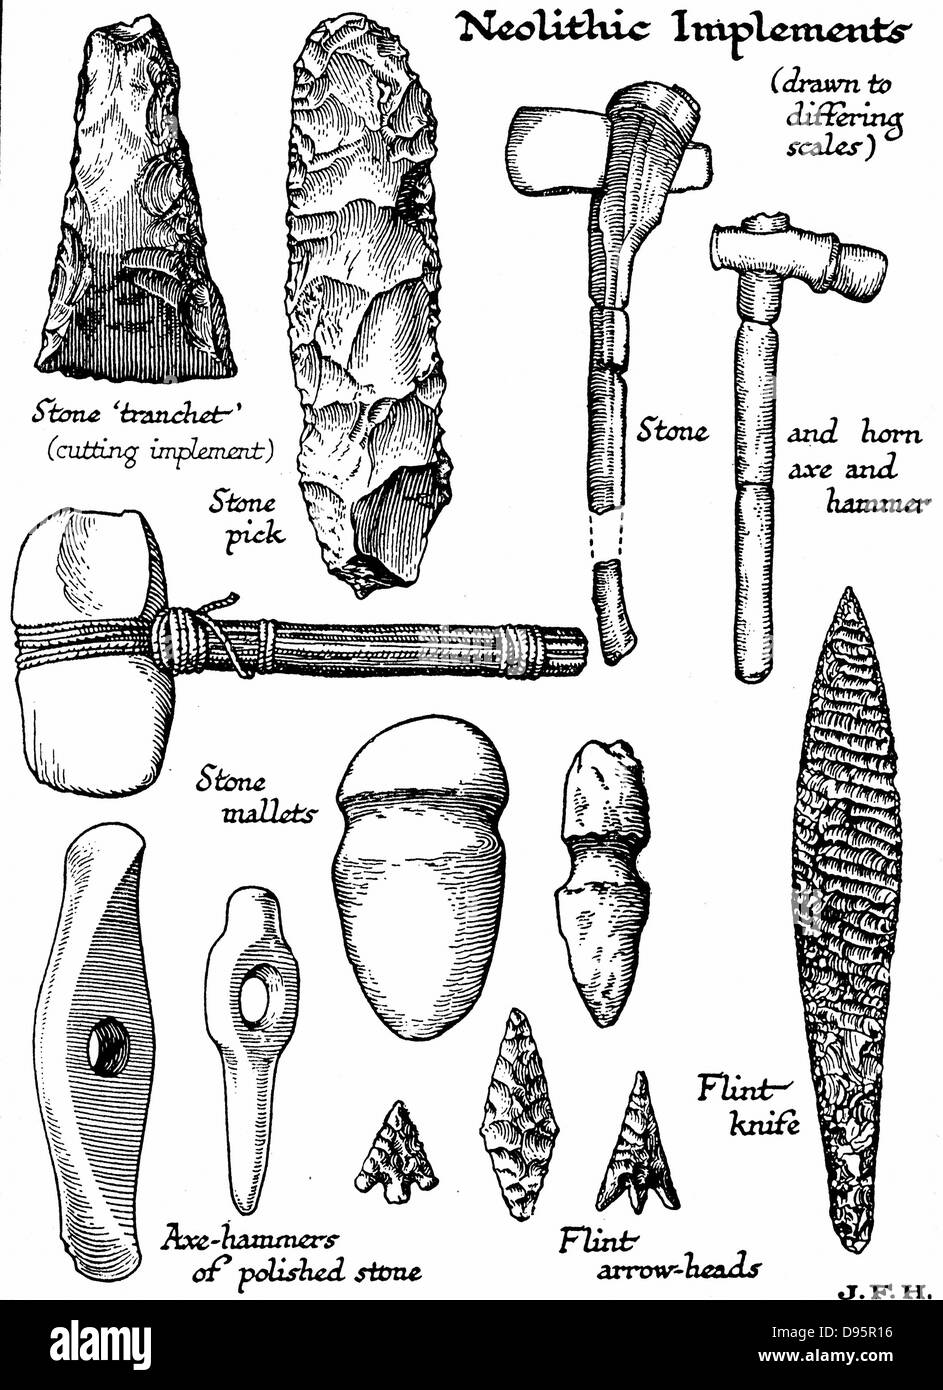 Neolithische Werkzeuge aus Stein, Feuerstein und Horn. Holzschnitt c1890  Stockfotografie - Alamy